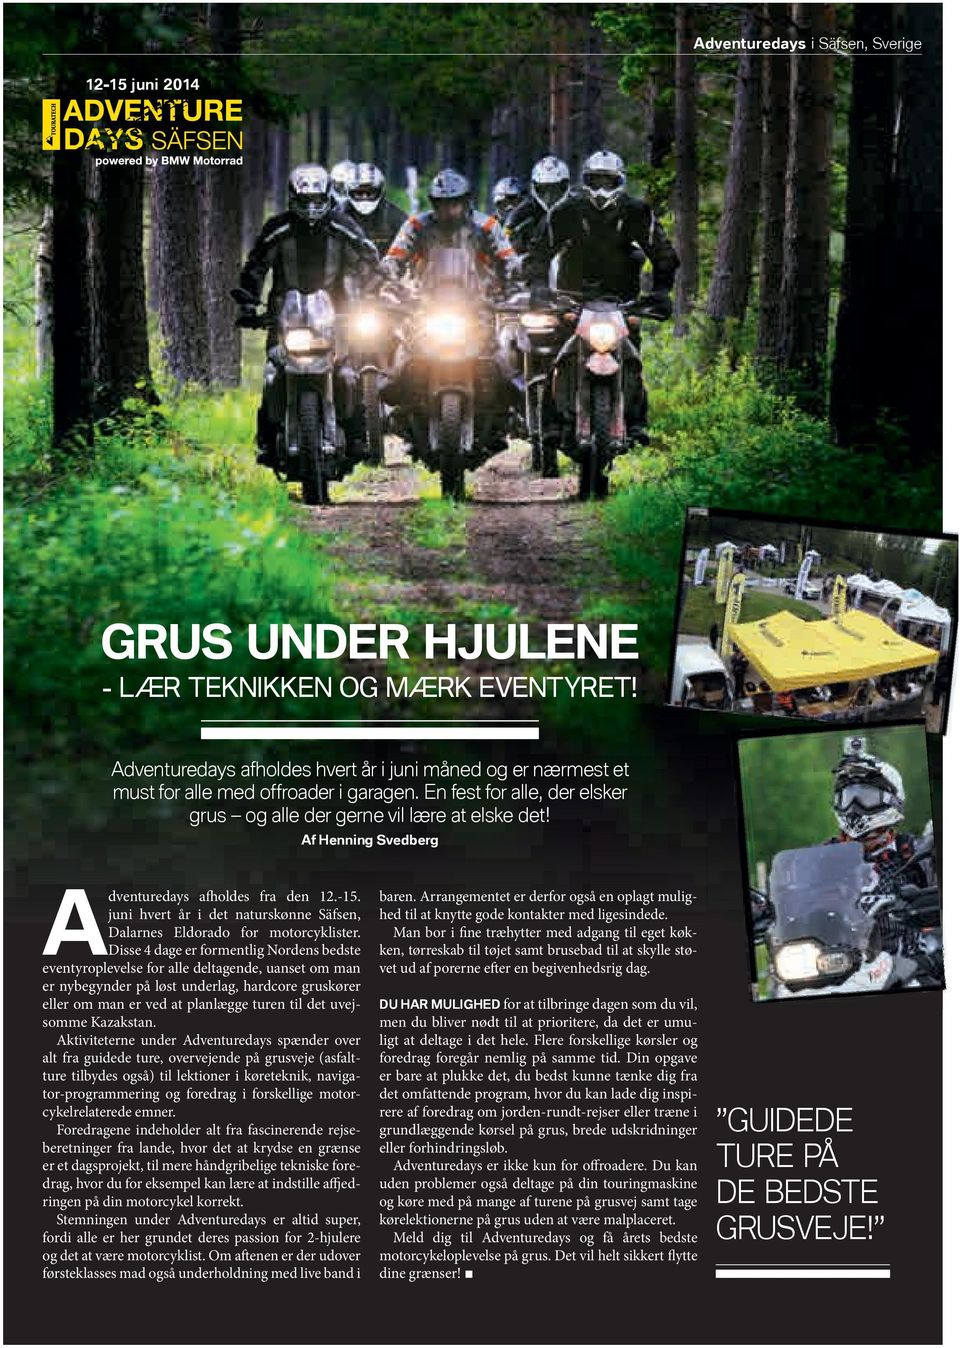 Af Henning Svedberg Adventuredays afholdes fra den 12.-15. juni hvert år i det naturskønne Säfsen, Dalarnes Eldorado for motorcyklister.